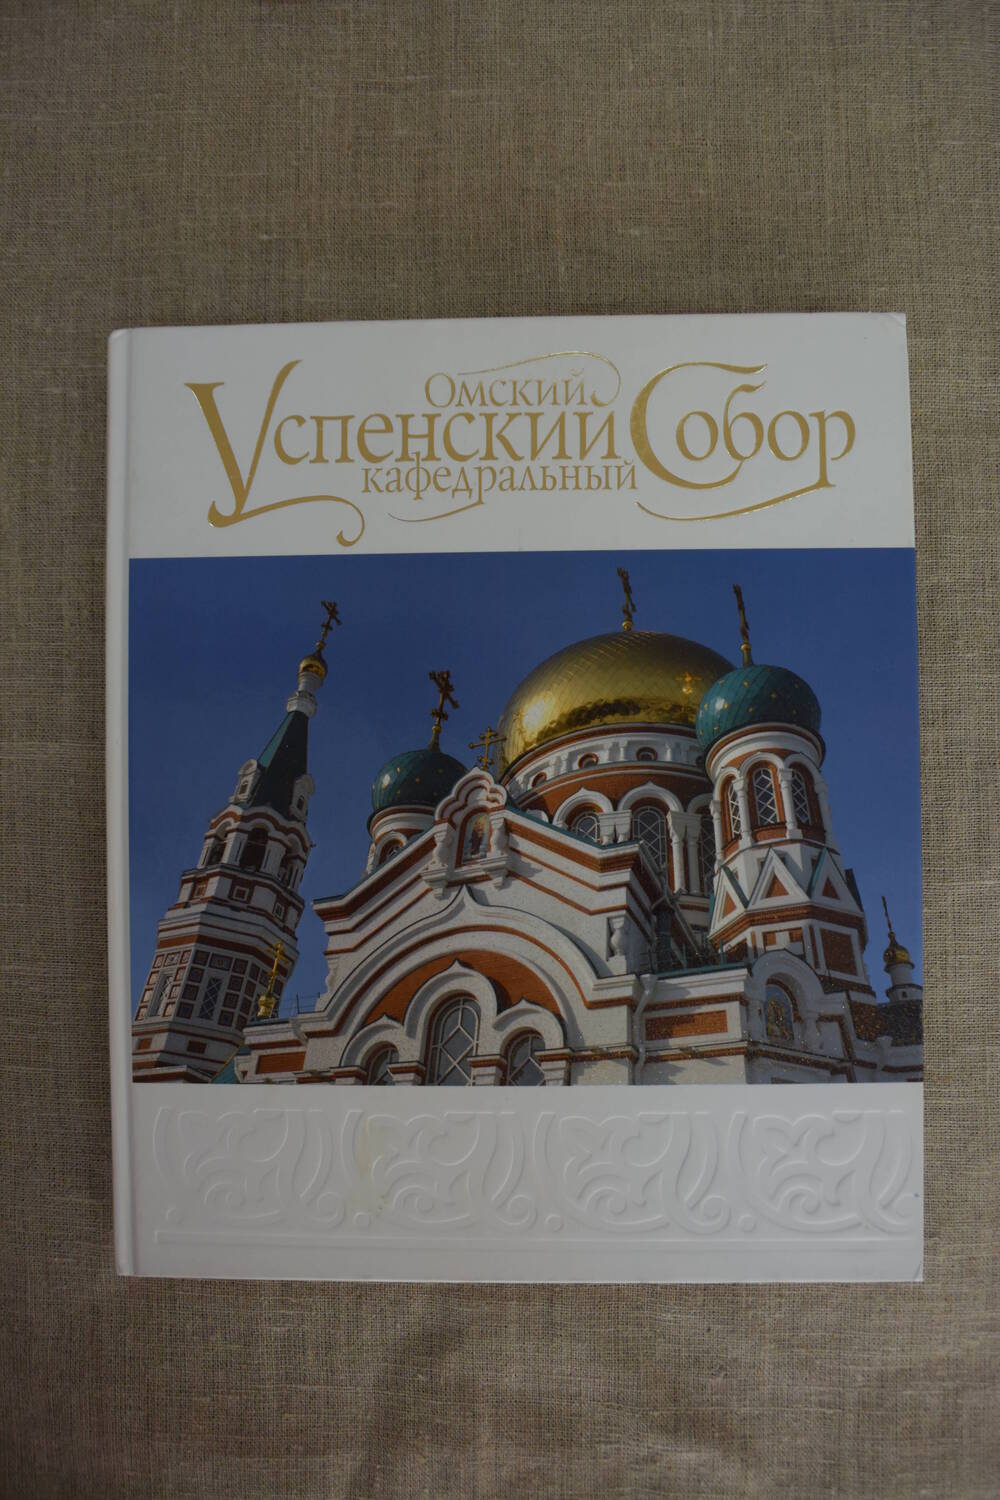 Книга  Омский  Успенский  кафедральный  собор